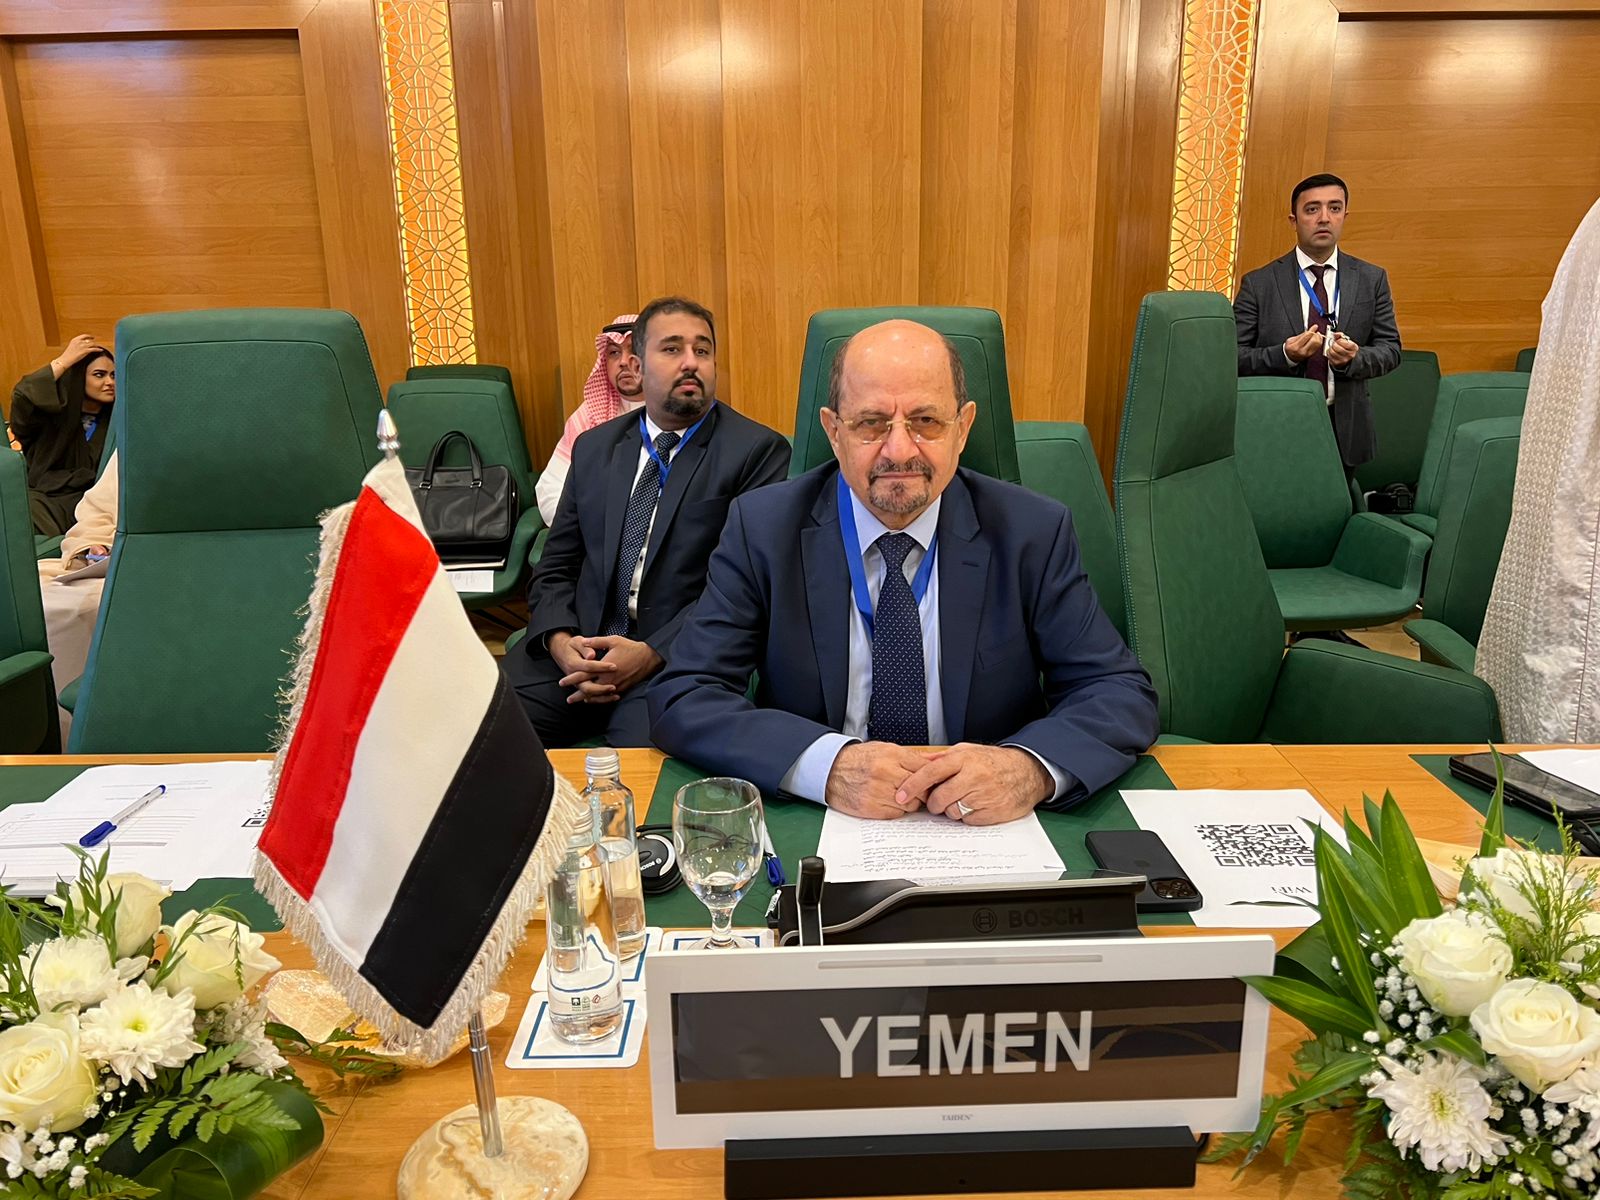 اليمن تشارك في الإجتماع الوزاري الإستثنائي لمنظمة التعاون الإسلامي بشأن جرائم الإحتلال الإسرائيلي